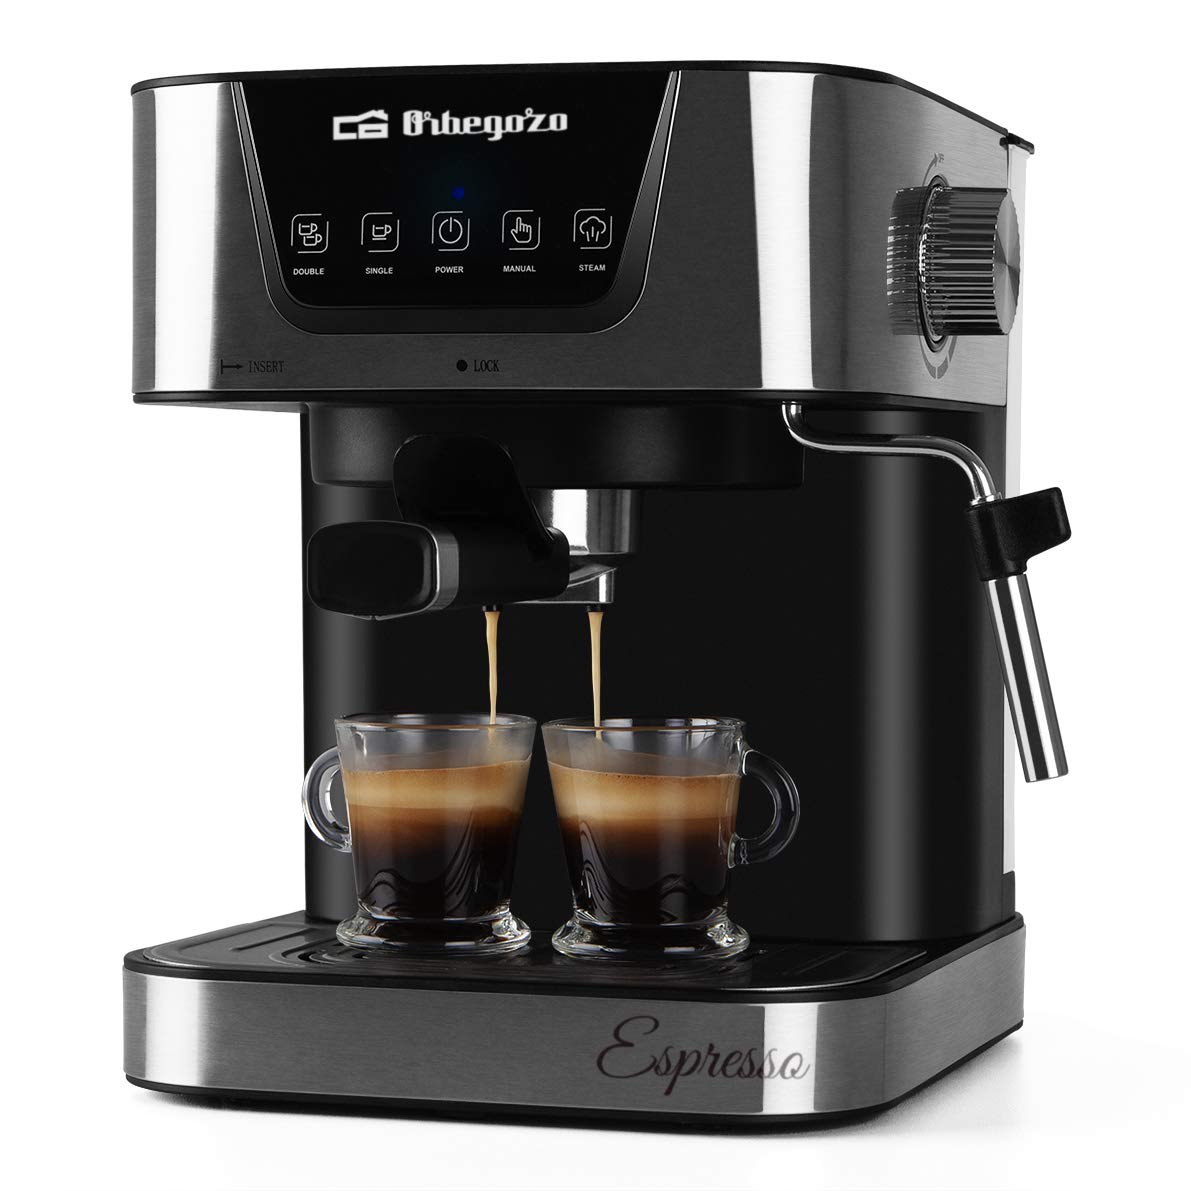 Orbegozo Kaffeemaschine für Expresso und Capuccino EX 6000, 20 Bar Druck, Behälter von 1,5 l, geeignet für Einzeldosierungen, 1050 W Leistung, Schwarz